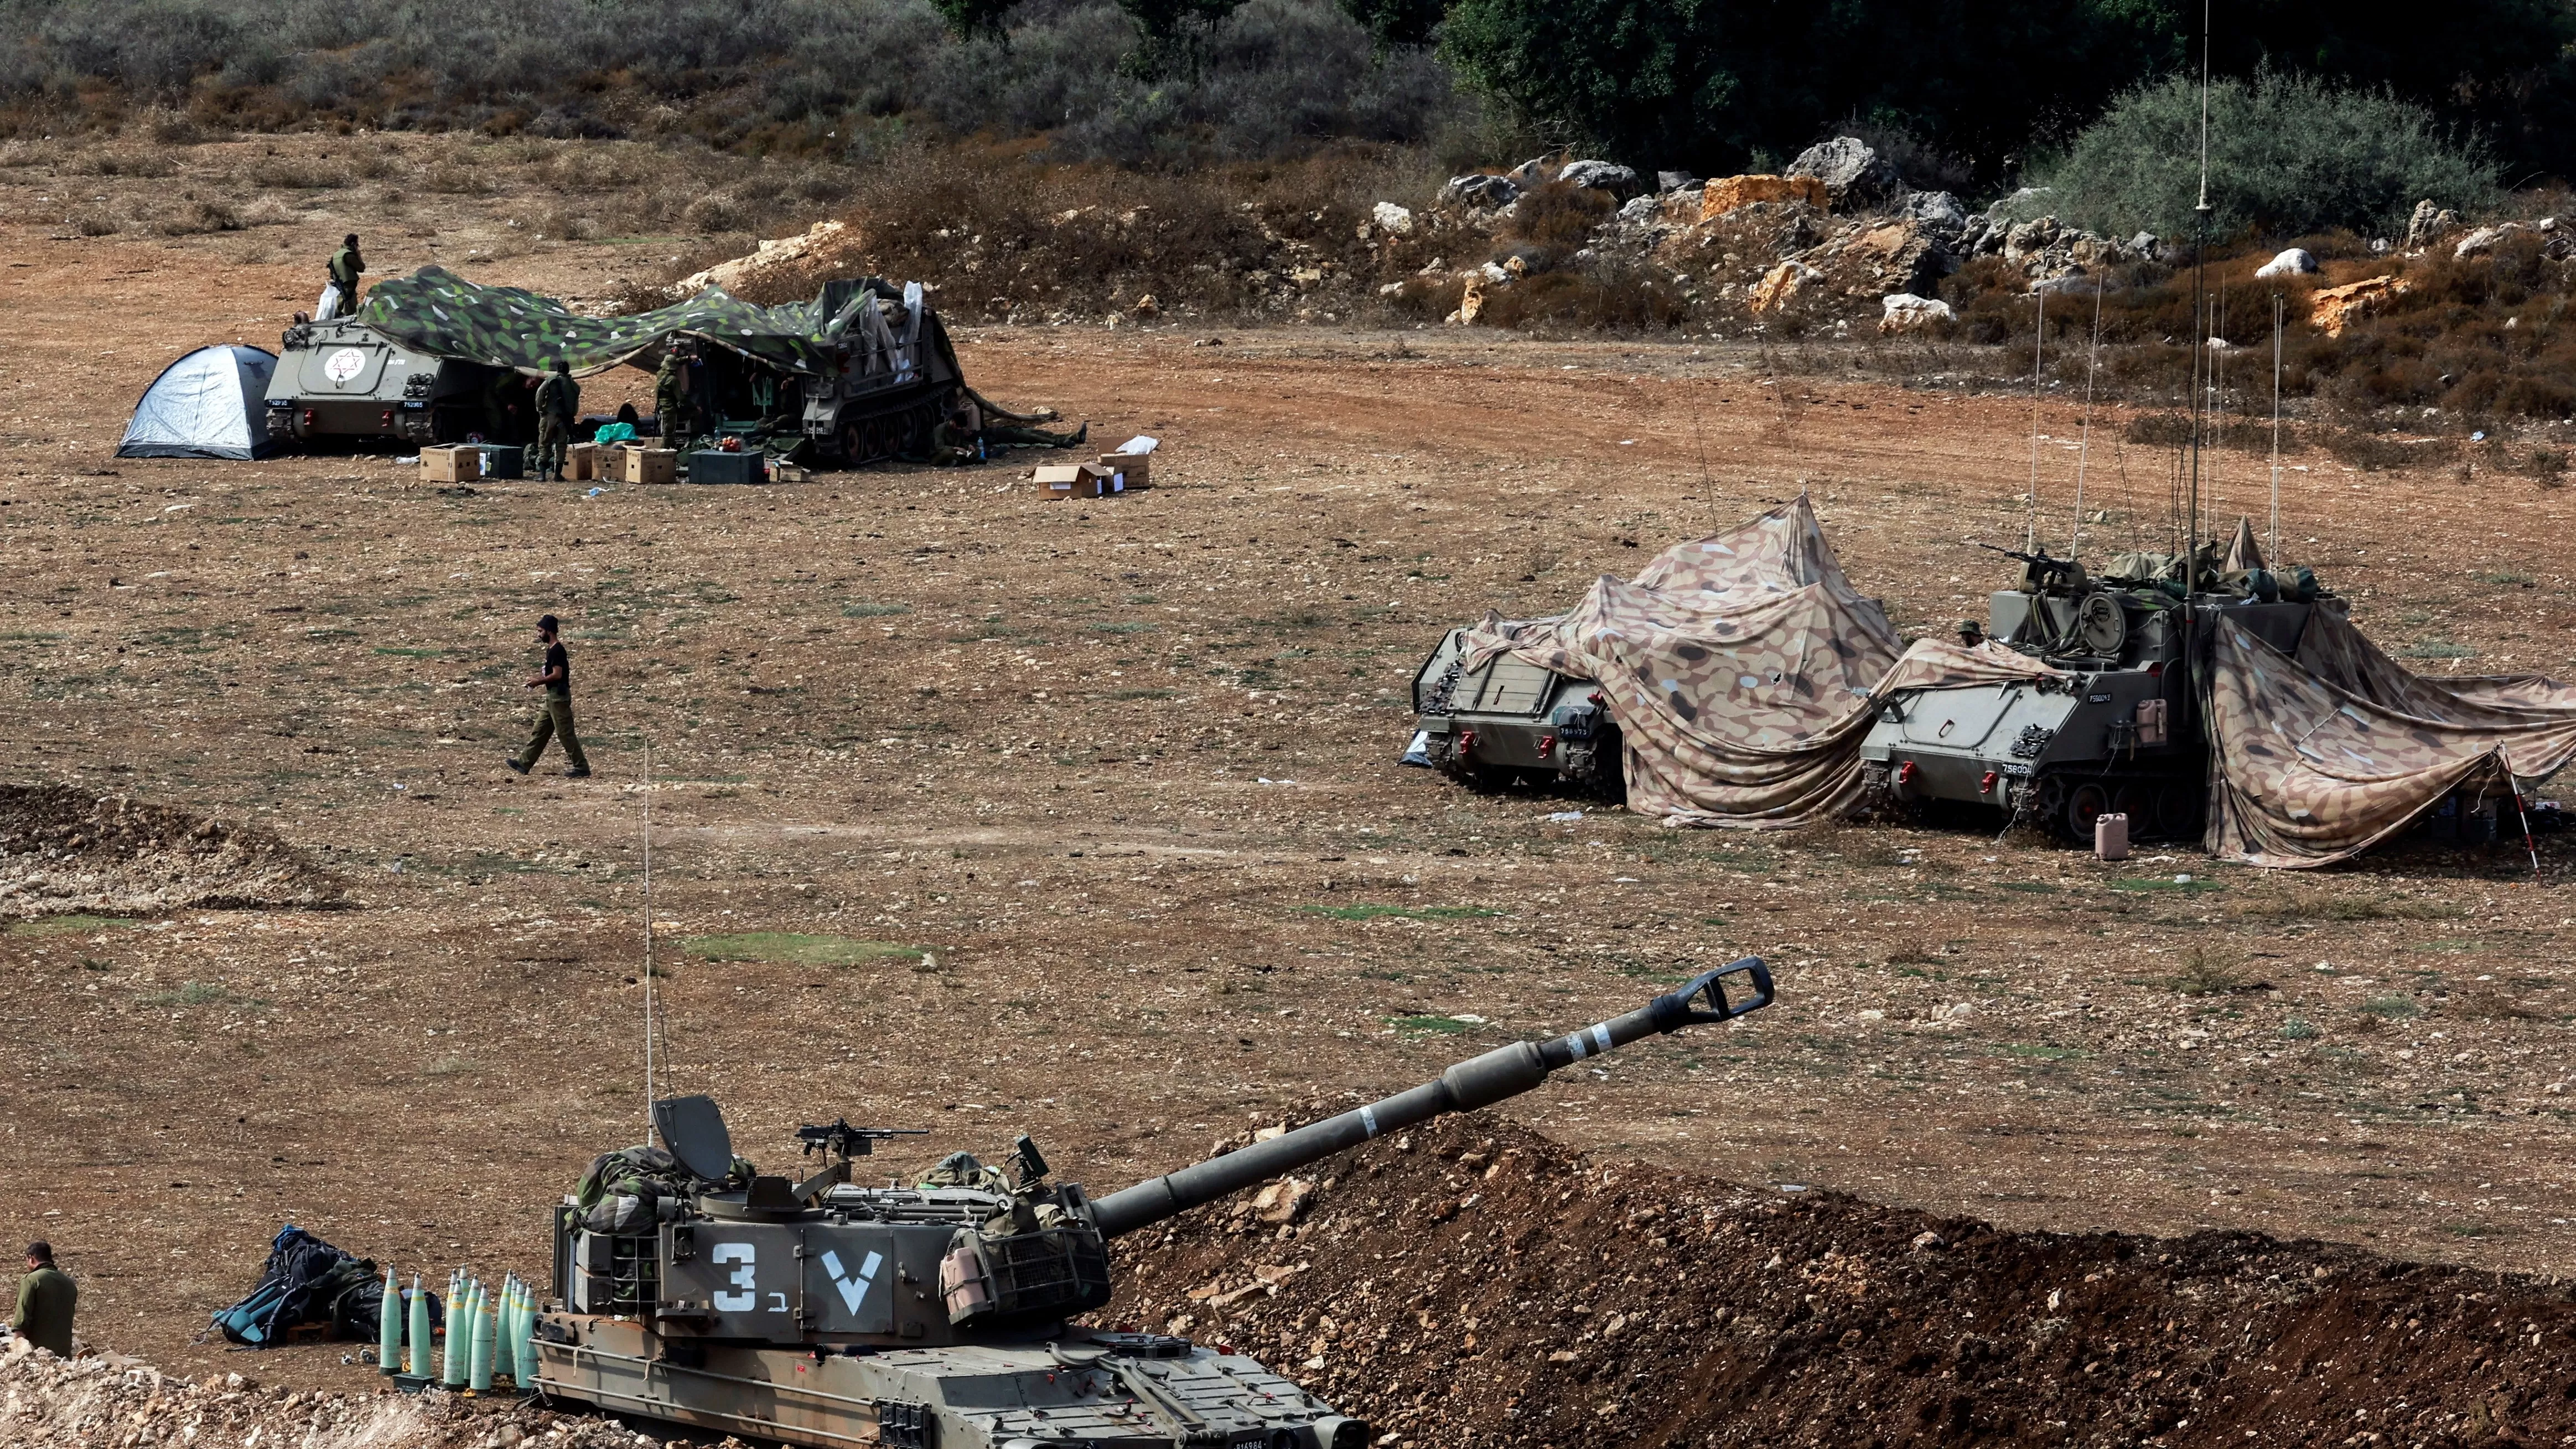 Լիբանանյան «Հեզբոլլահը» հարվածներ է հասցնում Իսրայելի հյուսիսին՝ ի պատասխան իր զինյալների մահվան